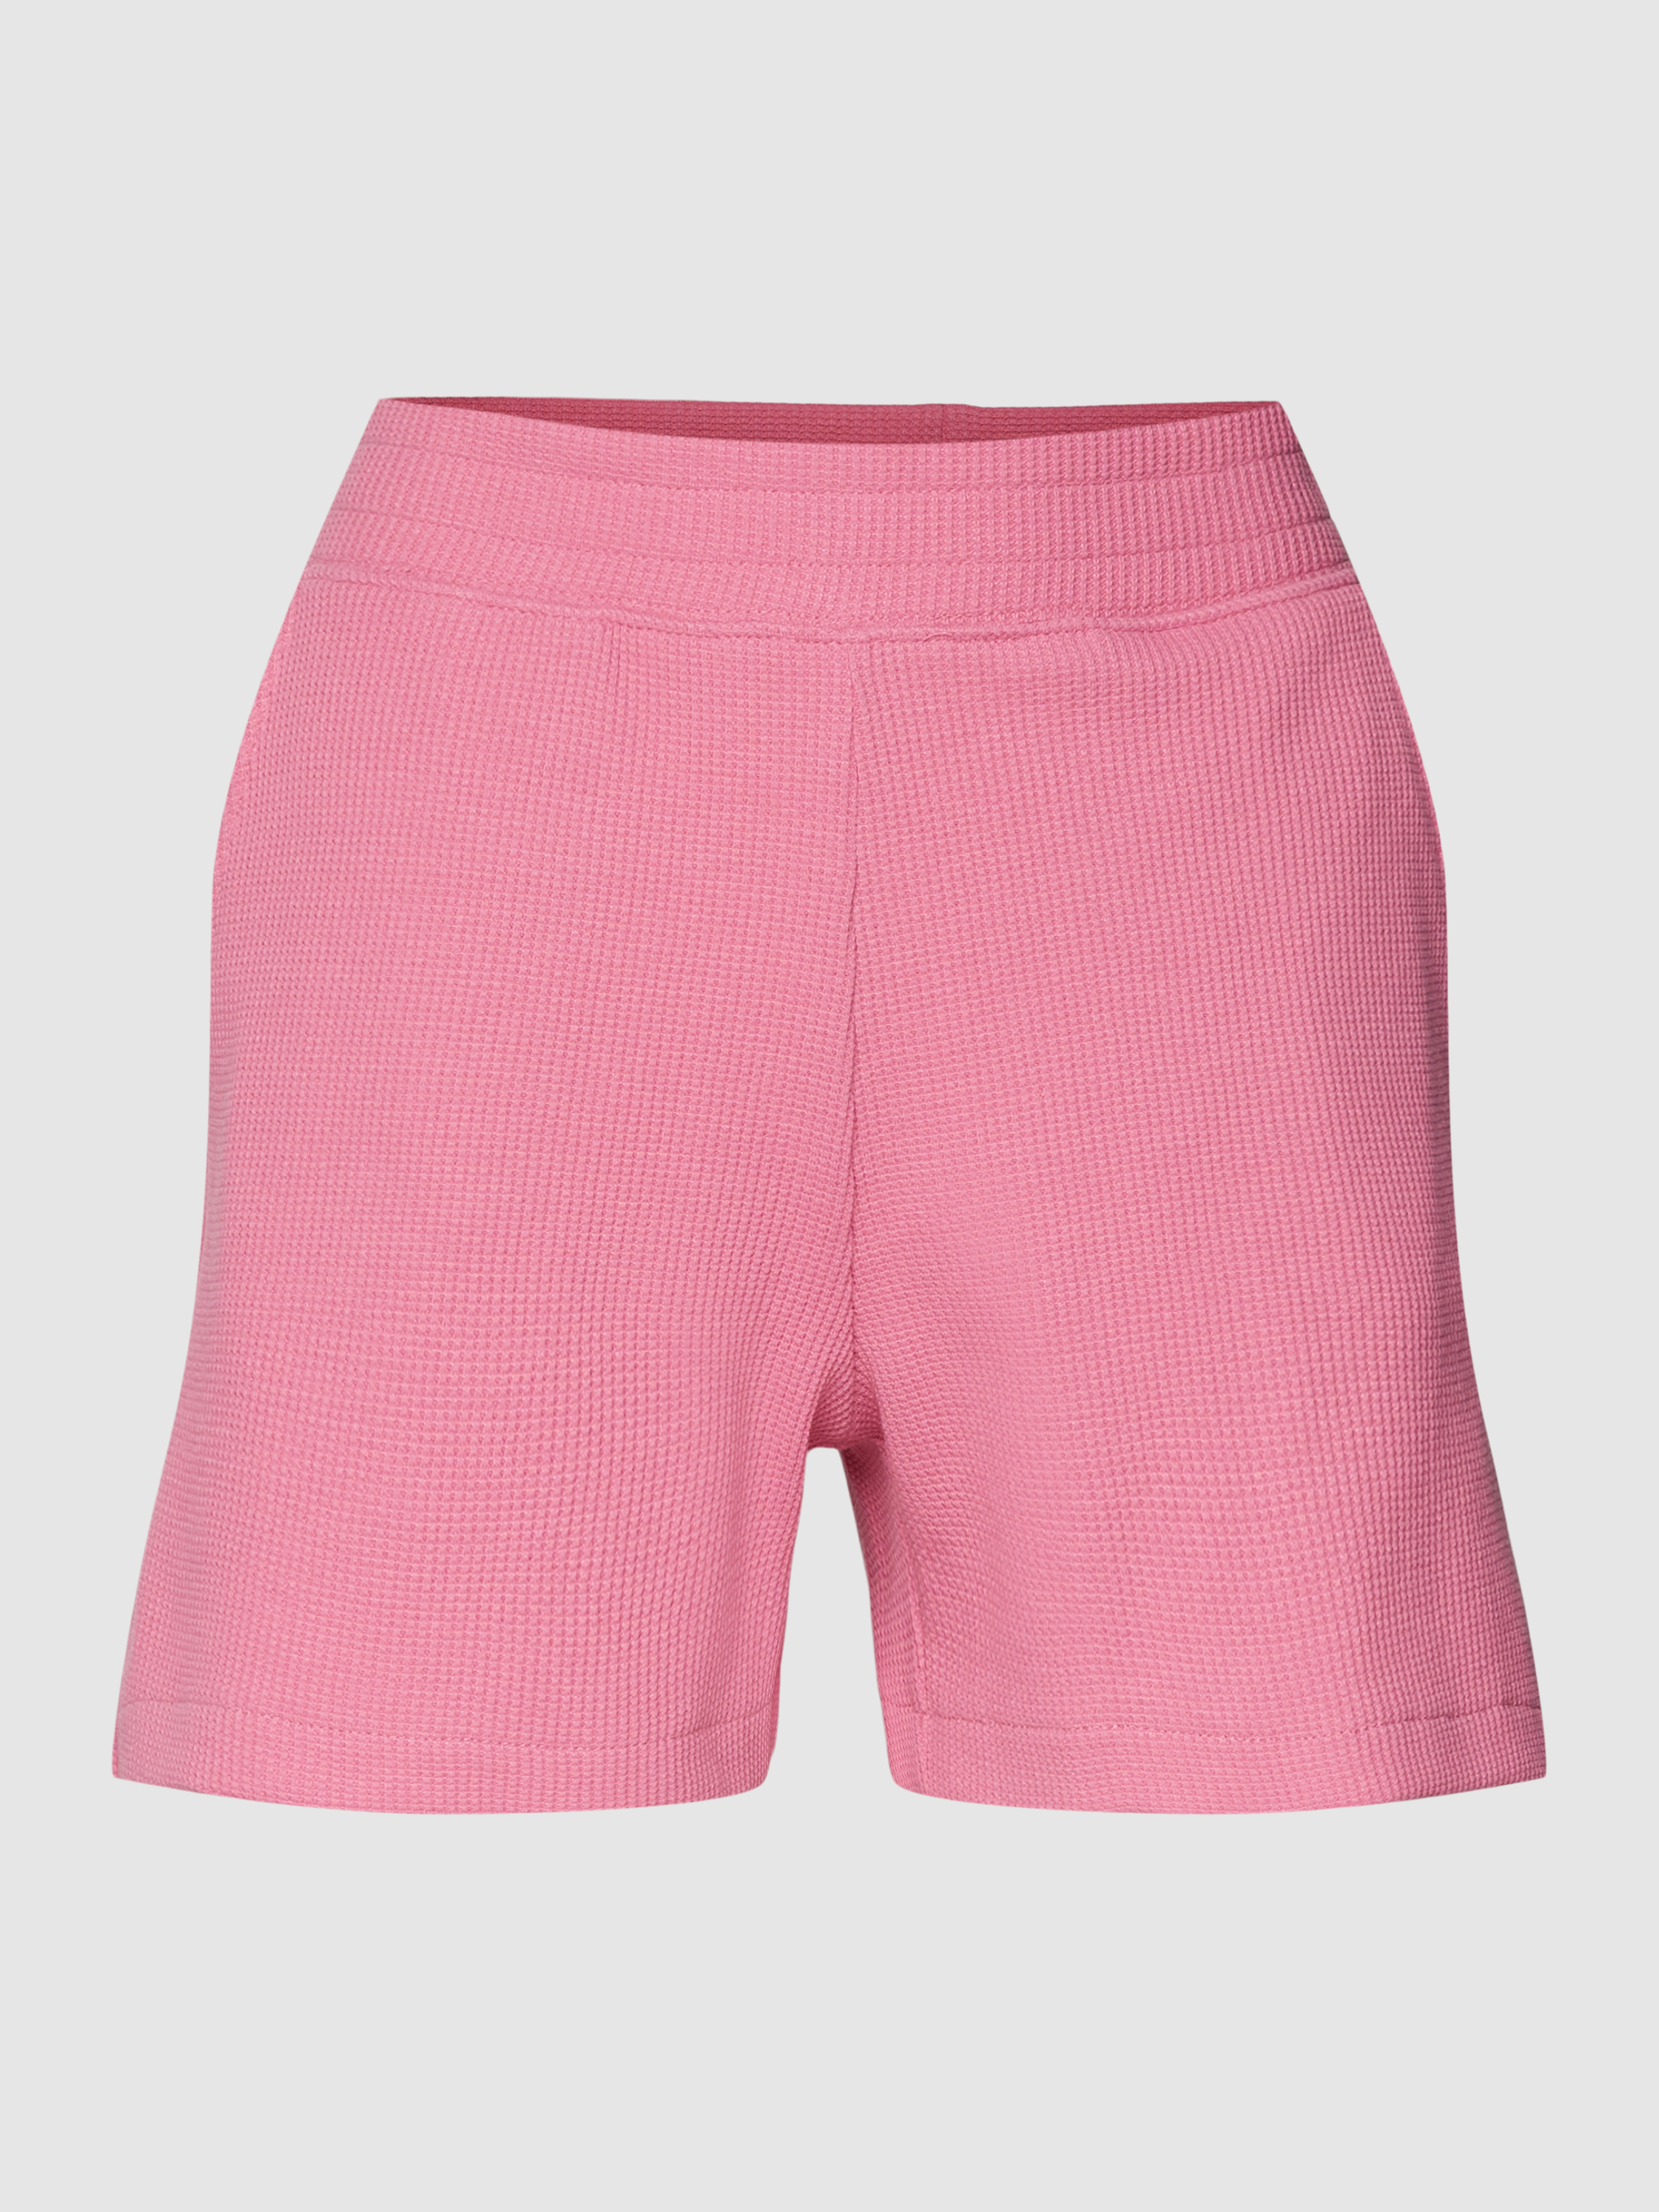 Трикотажные шорты женские Jake*s Casual 1753302 розовые S (доставка из-за рубежа)